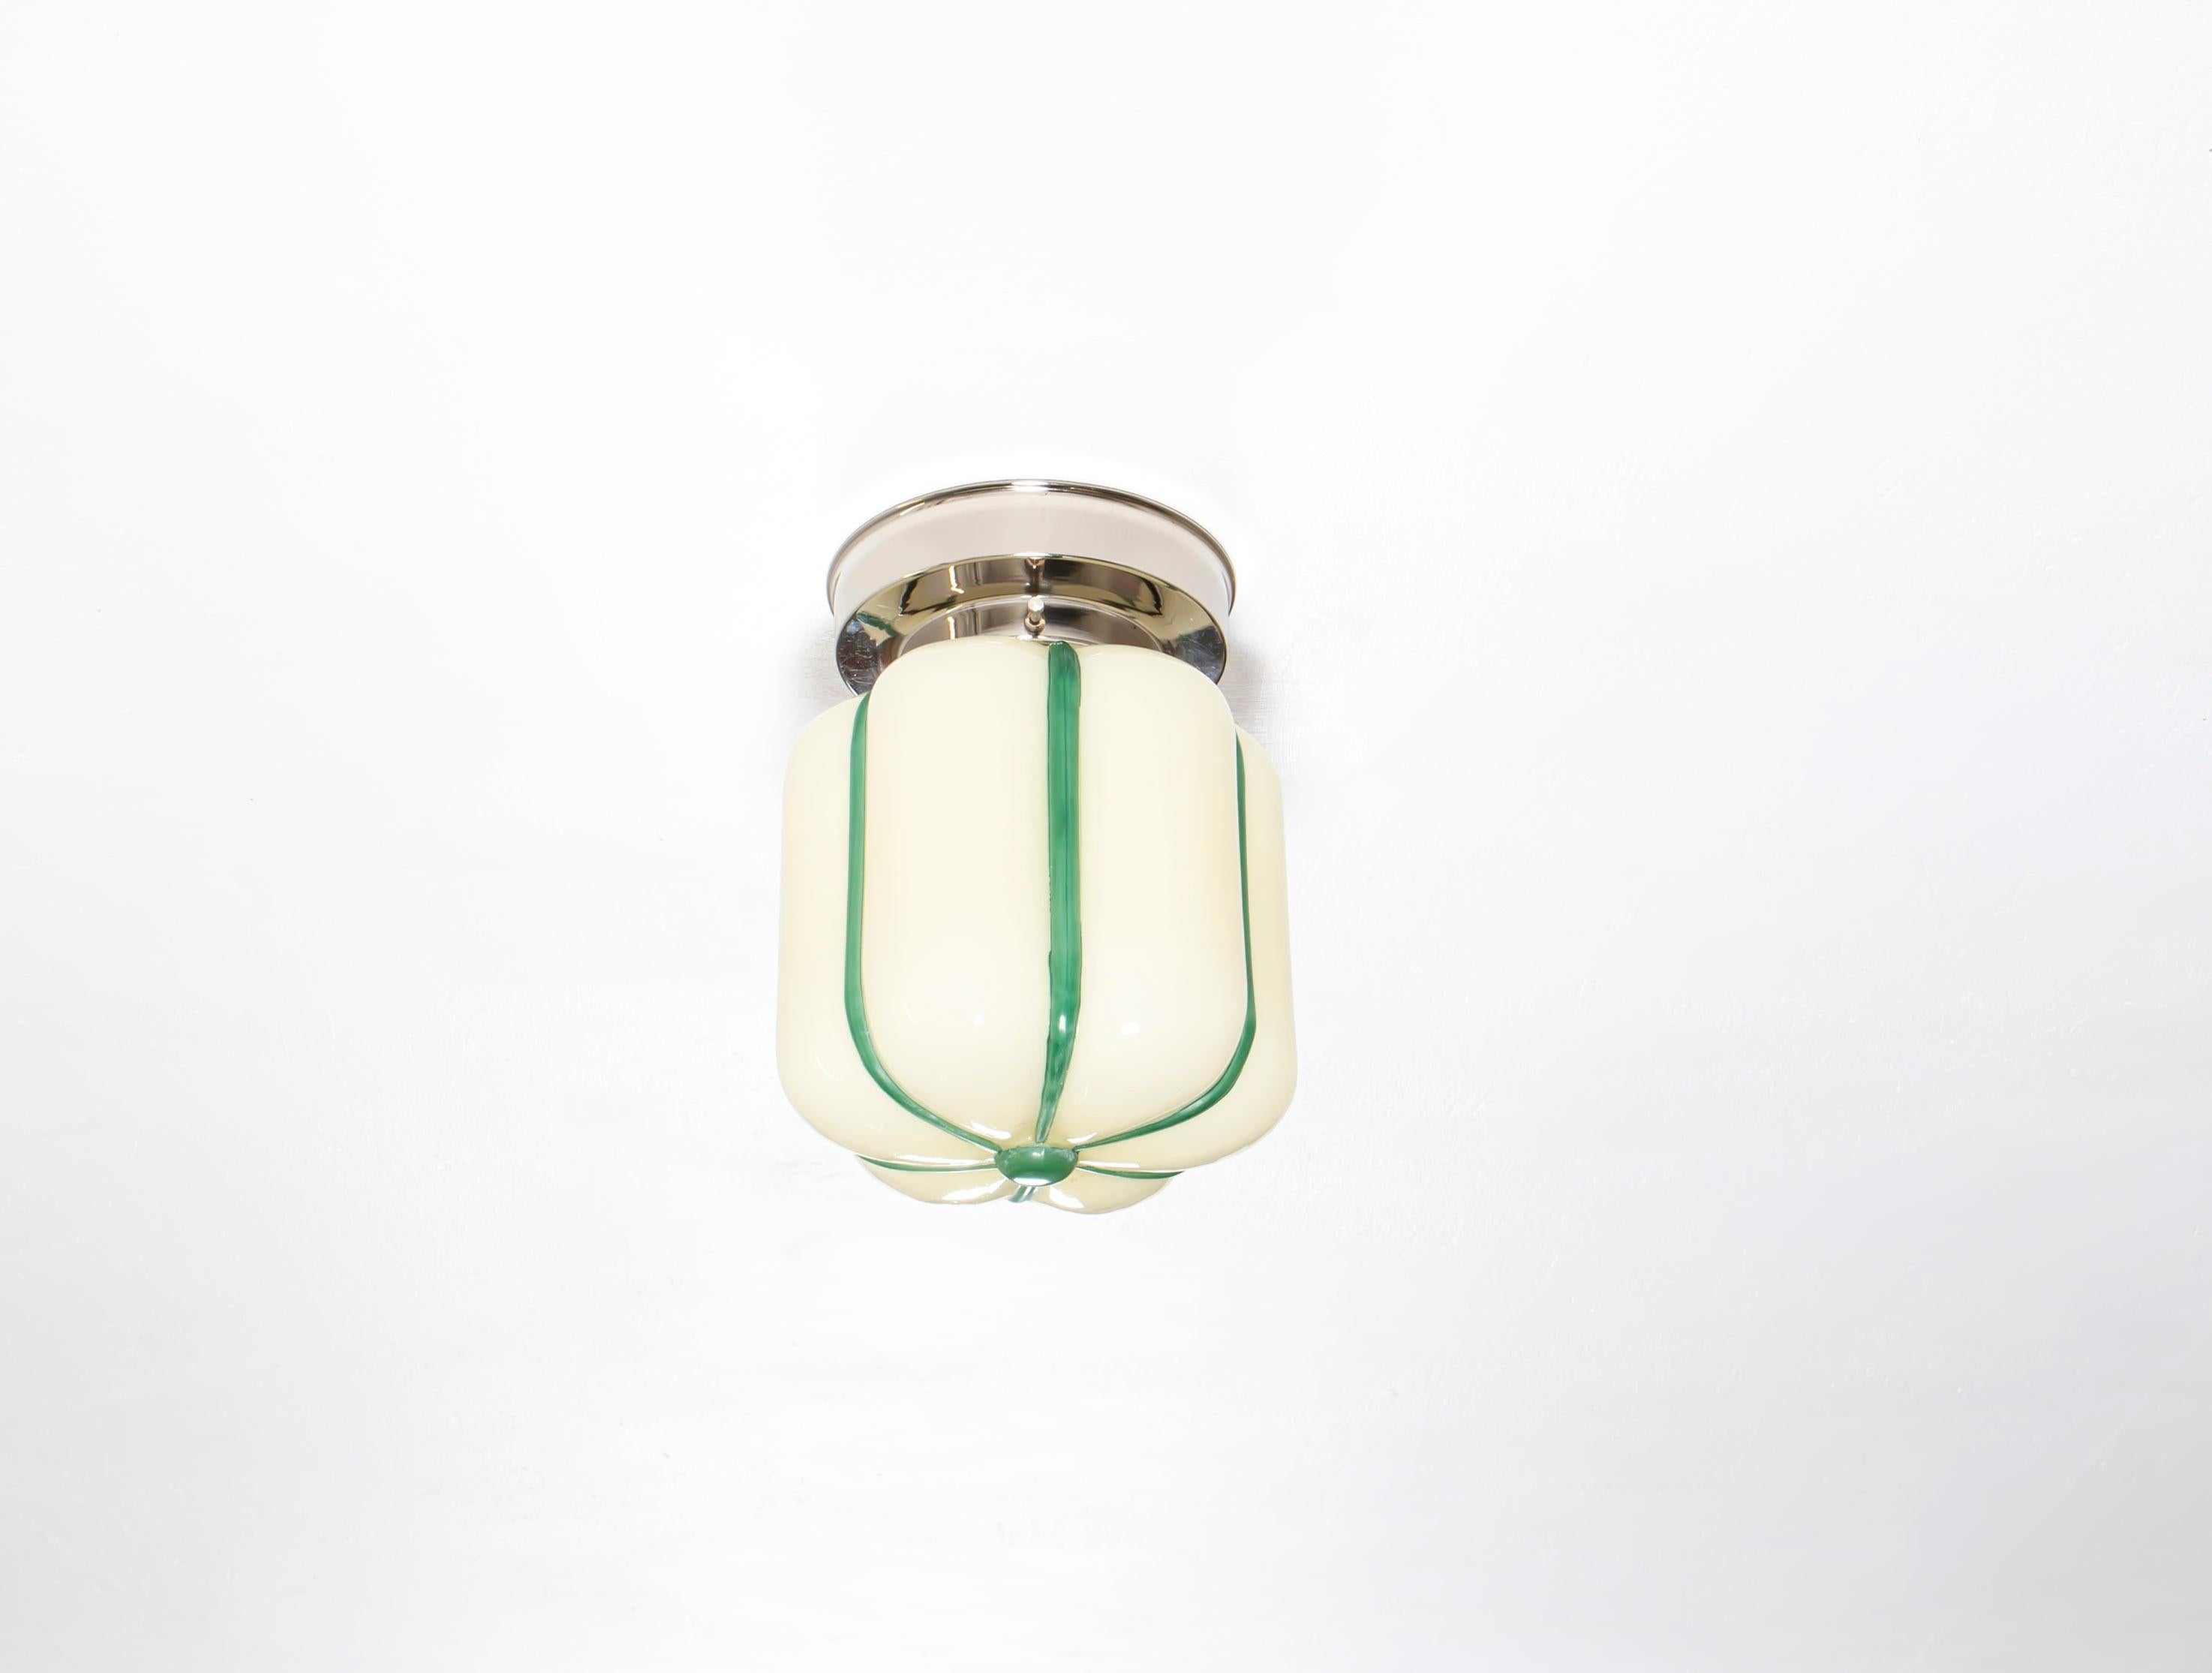 Wunderschöne und dekorative Leuchte aus Opalglas mit verchromtem Metallsockel. Entworfen und hergestellt in Norwegen in der ersten Hälfte der 1950er Jahre. Die Lampe ist voll funktionsfähig und in sehr gutem Vintage-Zustand. Sie ist mit einer